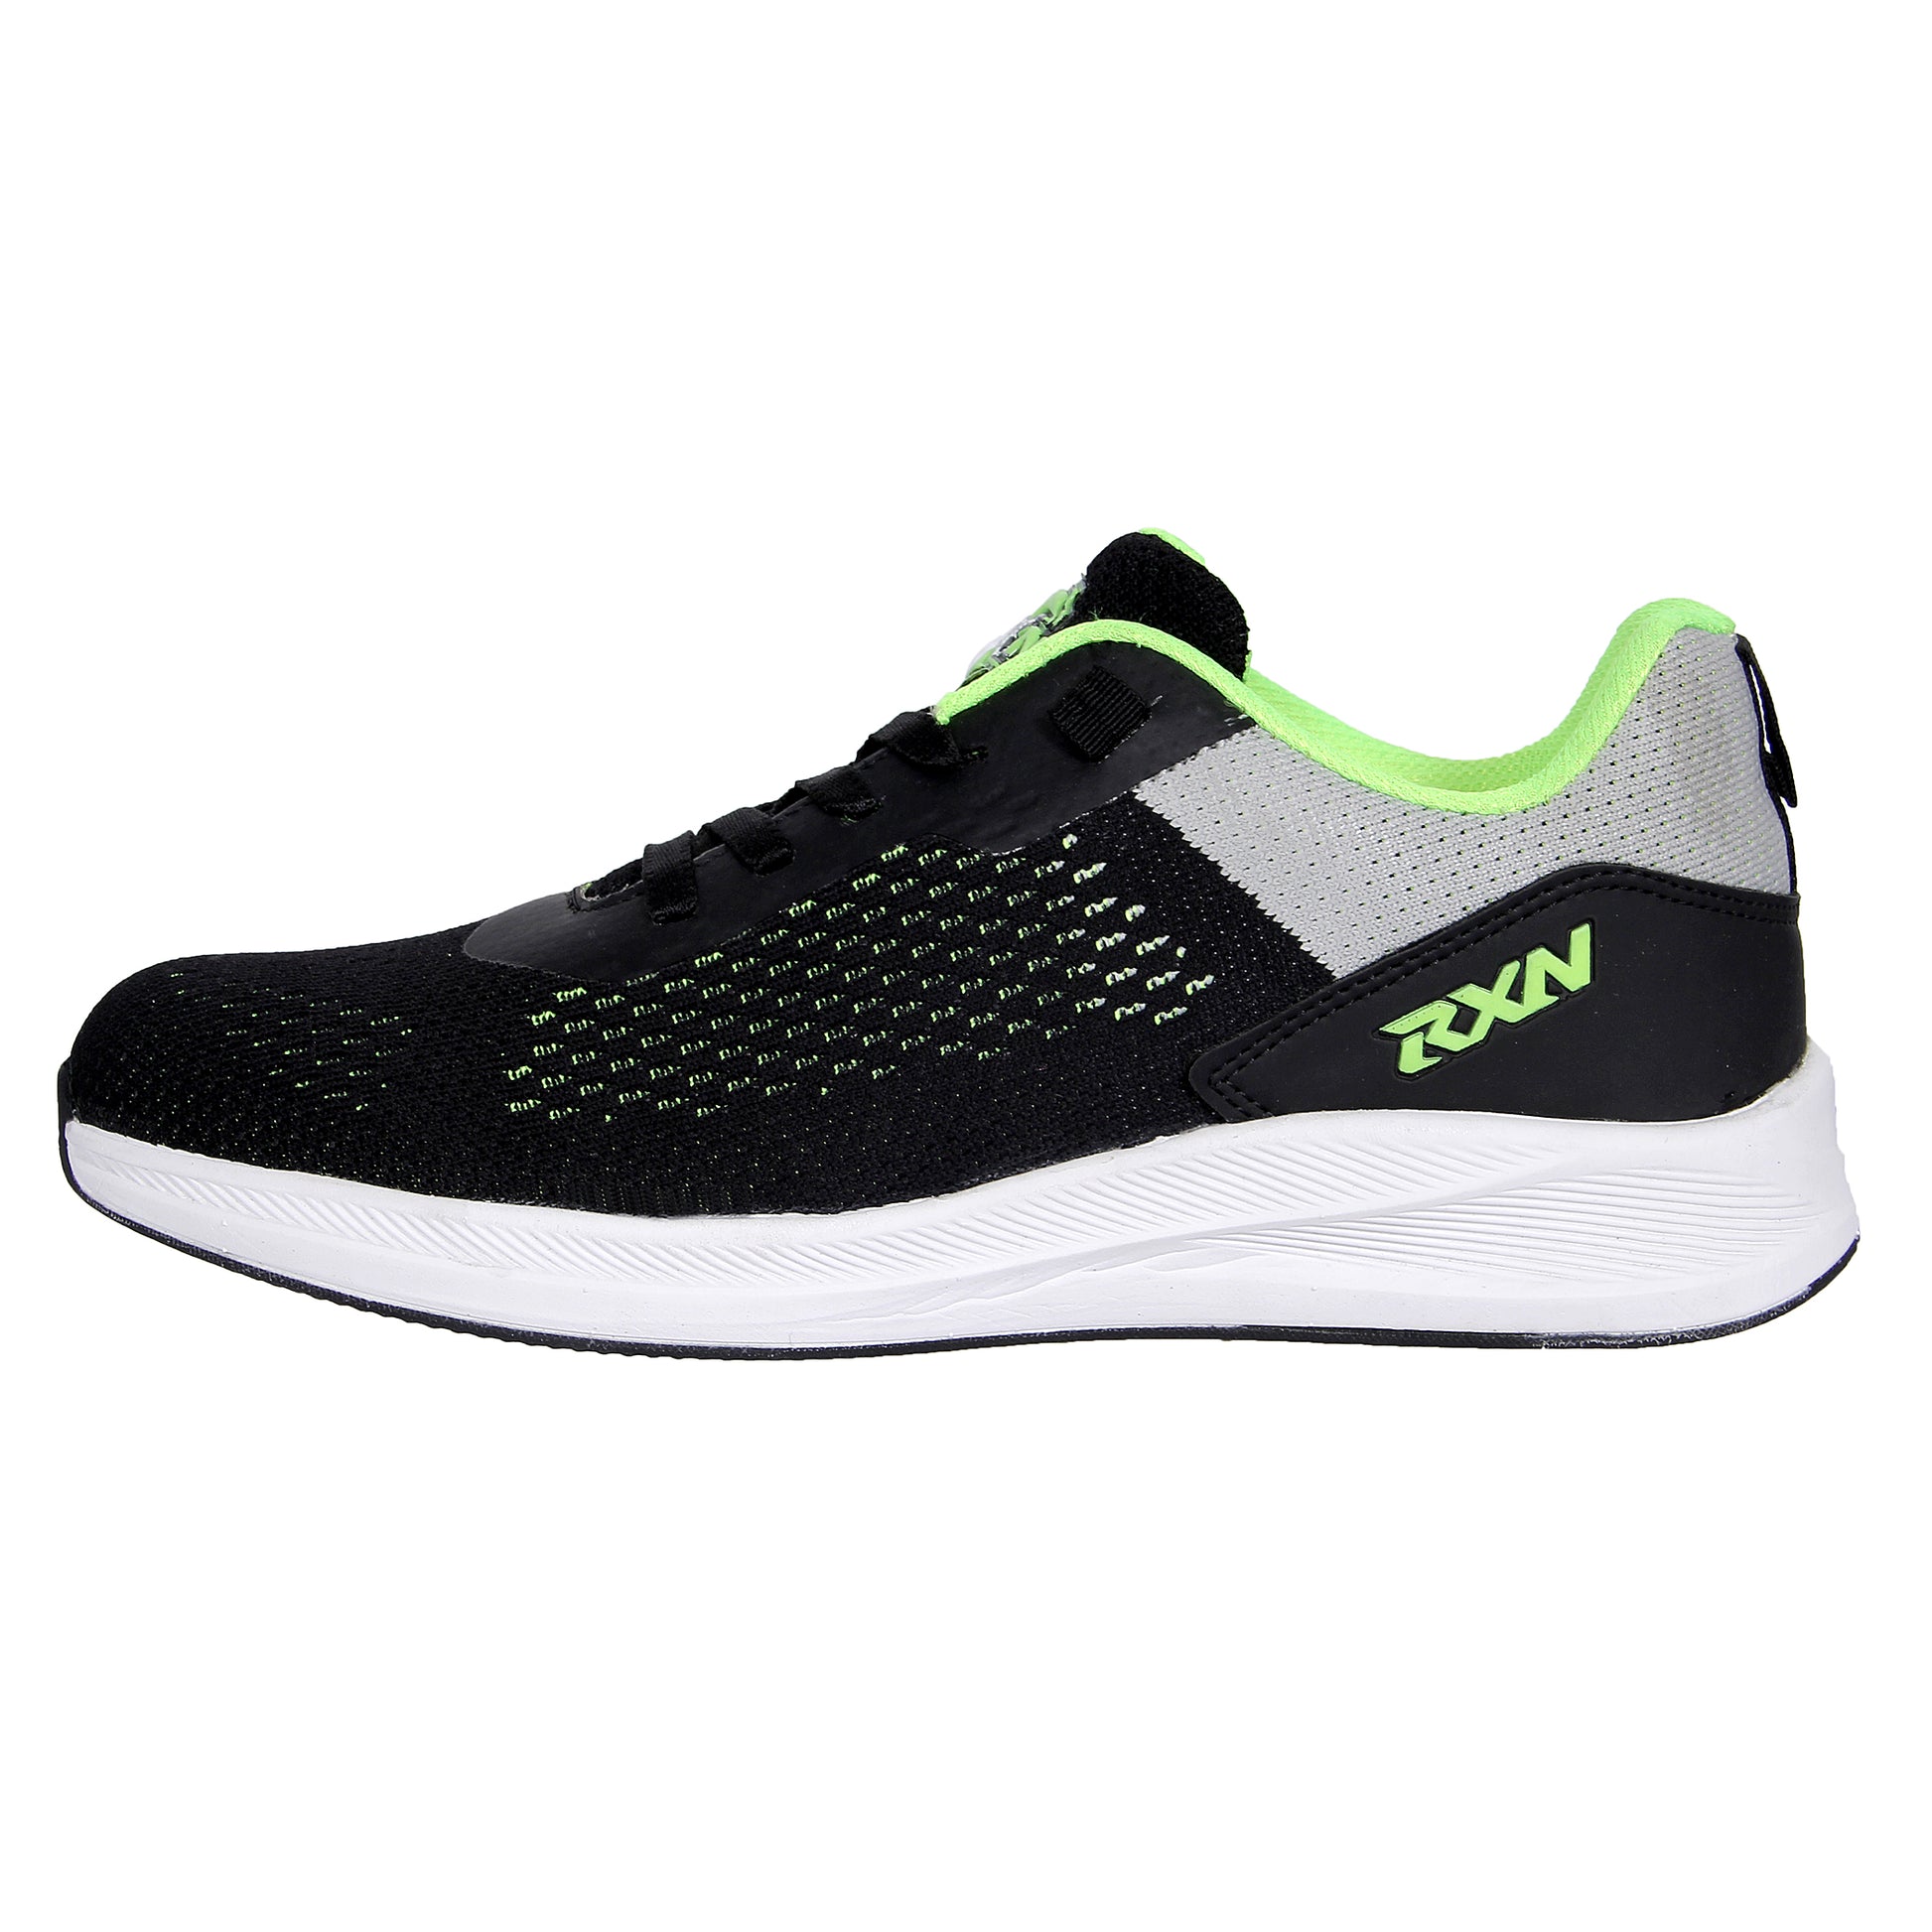 RXN® Jogging Shoes - RXN SPORTS